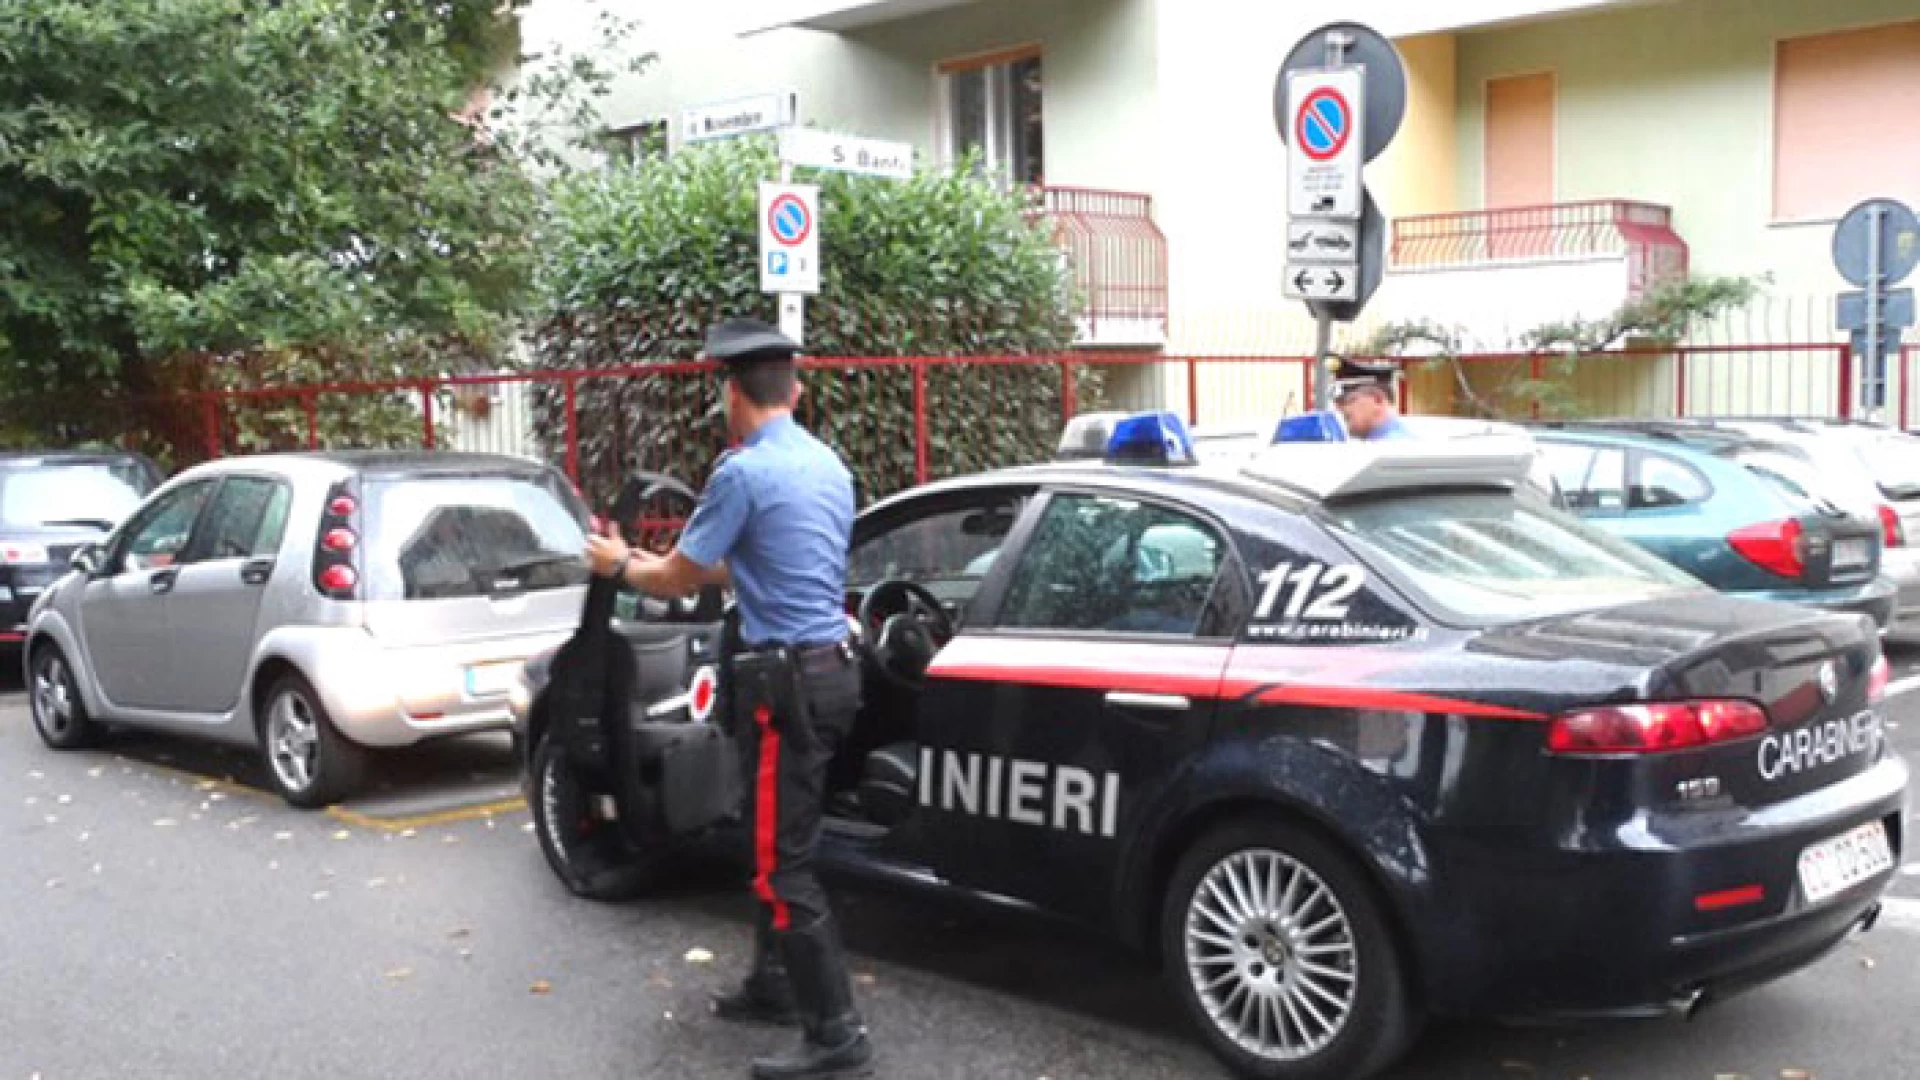 Monteroduni: i Carabinieri denunciano un 48enne per furto aggravato. Aveva rubato attrezzi agricoli.